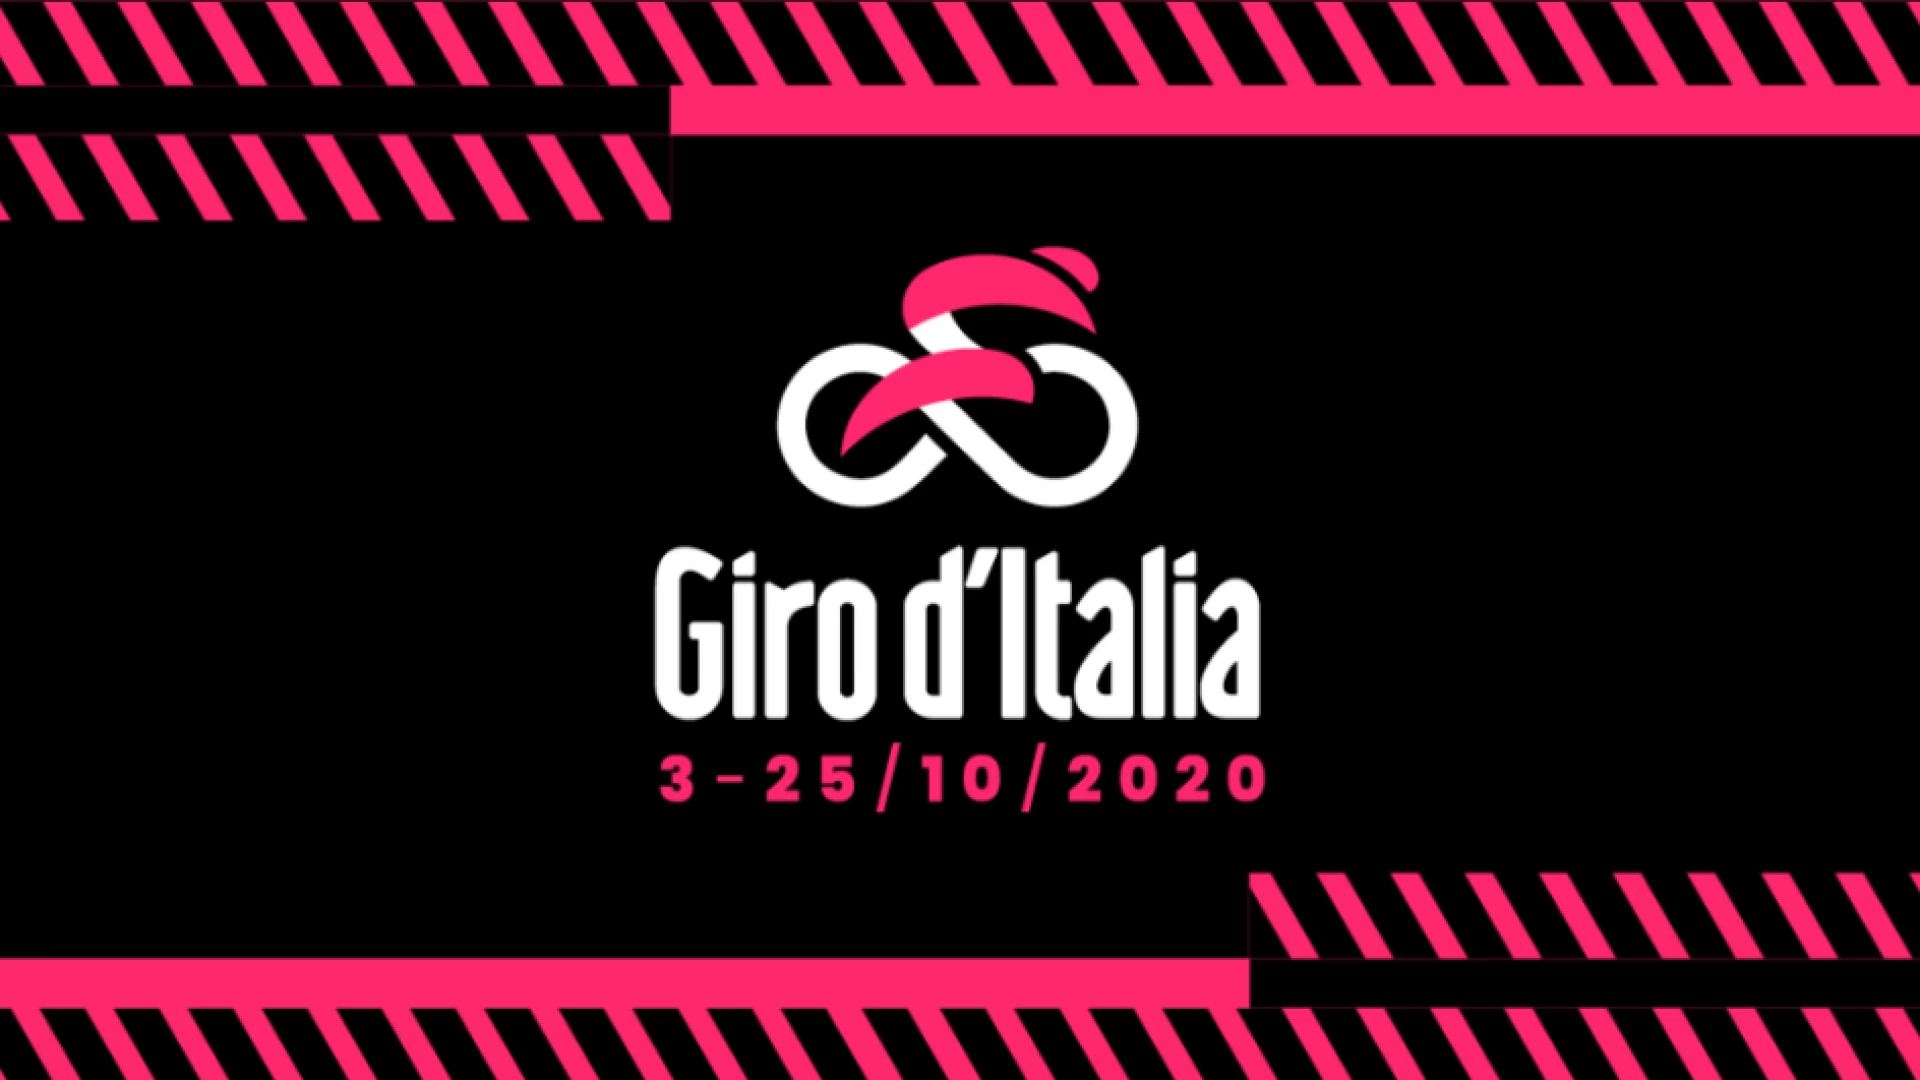 GIRO D’ITALIA 2020¬: Domenica 11 Ottobre la 9^ tappa S. Salvo-Roccaraso  (Aremogna)